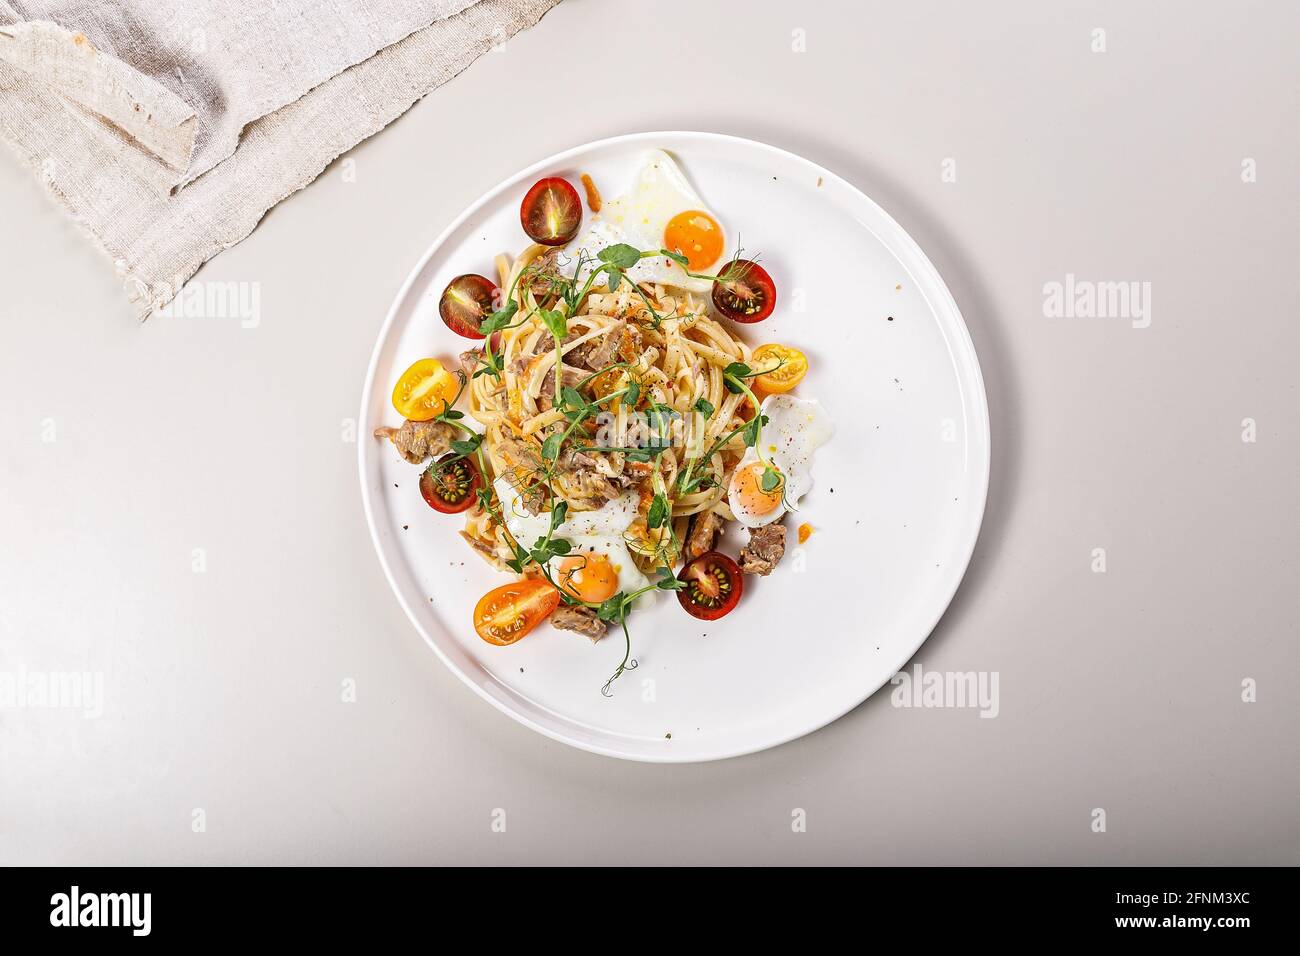 Délicieux déjeuner ou dîner méditerranéen.Délicieux spaghetti maison avec légumes, fromage et œufs de caille frits.Cuisine italienne traditionnelle. Banque D'Images